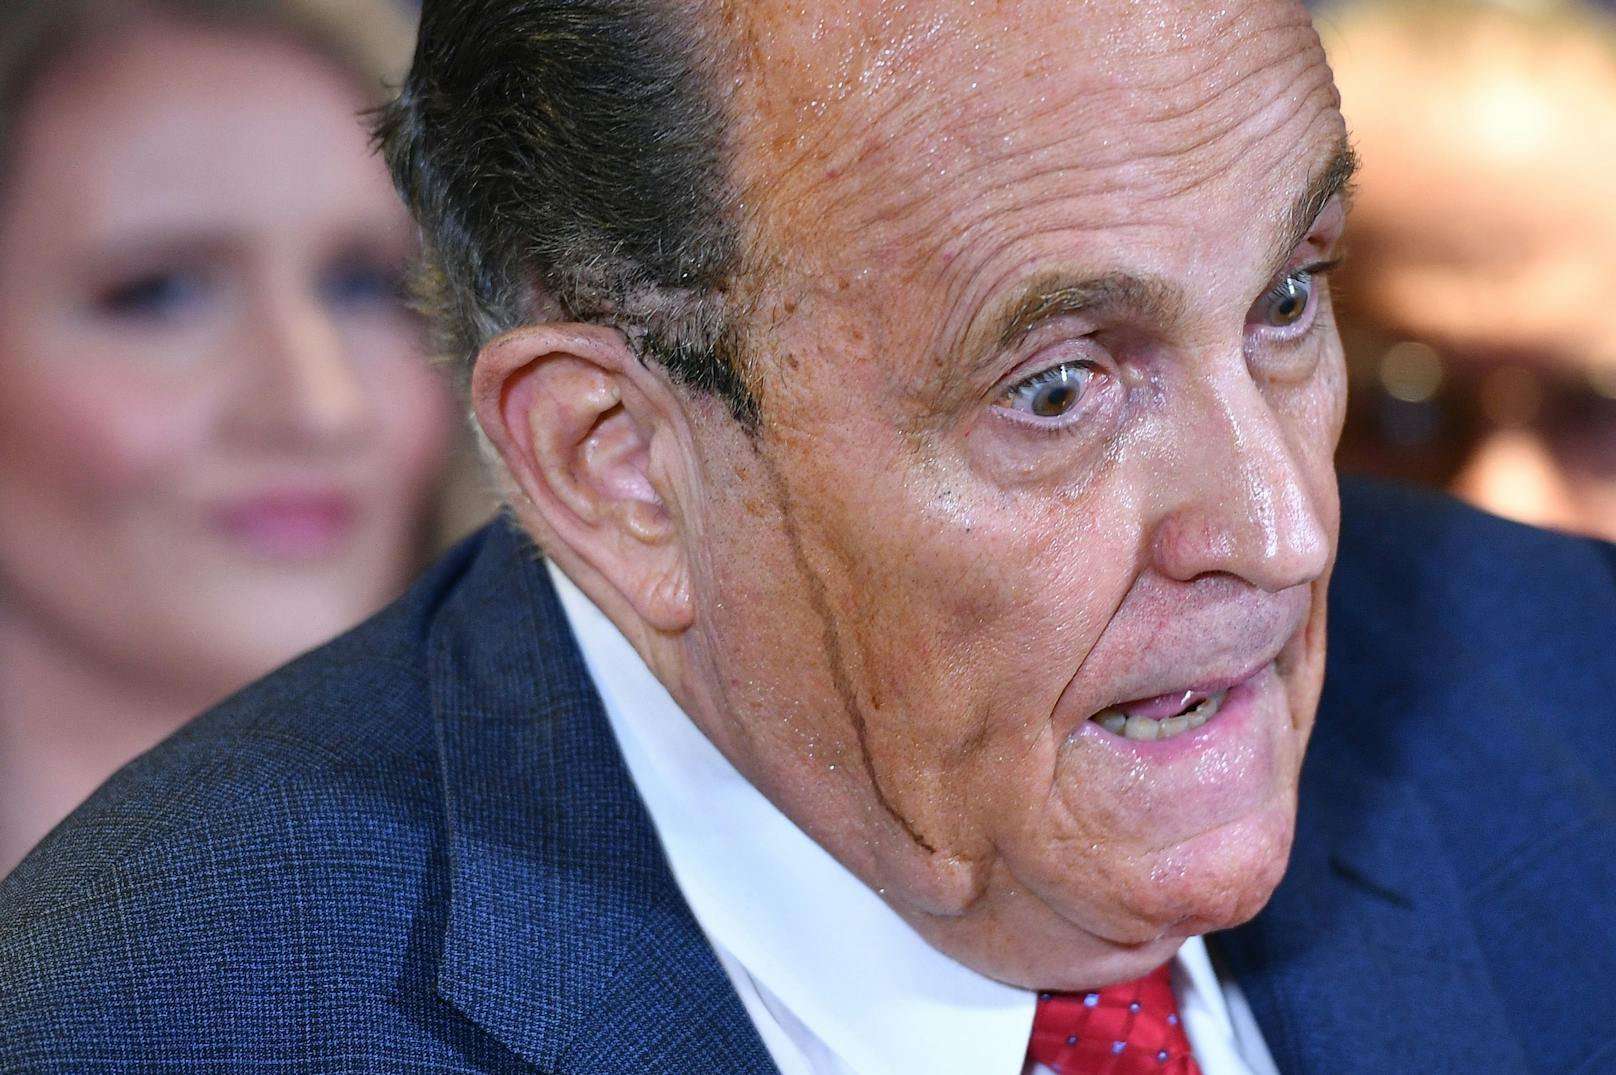 Der braune Schweiß, der Rudy Giuliani bei der Medienkonferenz vom Donnerstag übers Gesicht lief, ließ den Inhalt seines Monologs zur Nebensache werden.